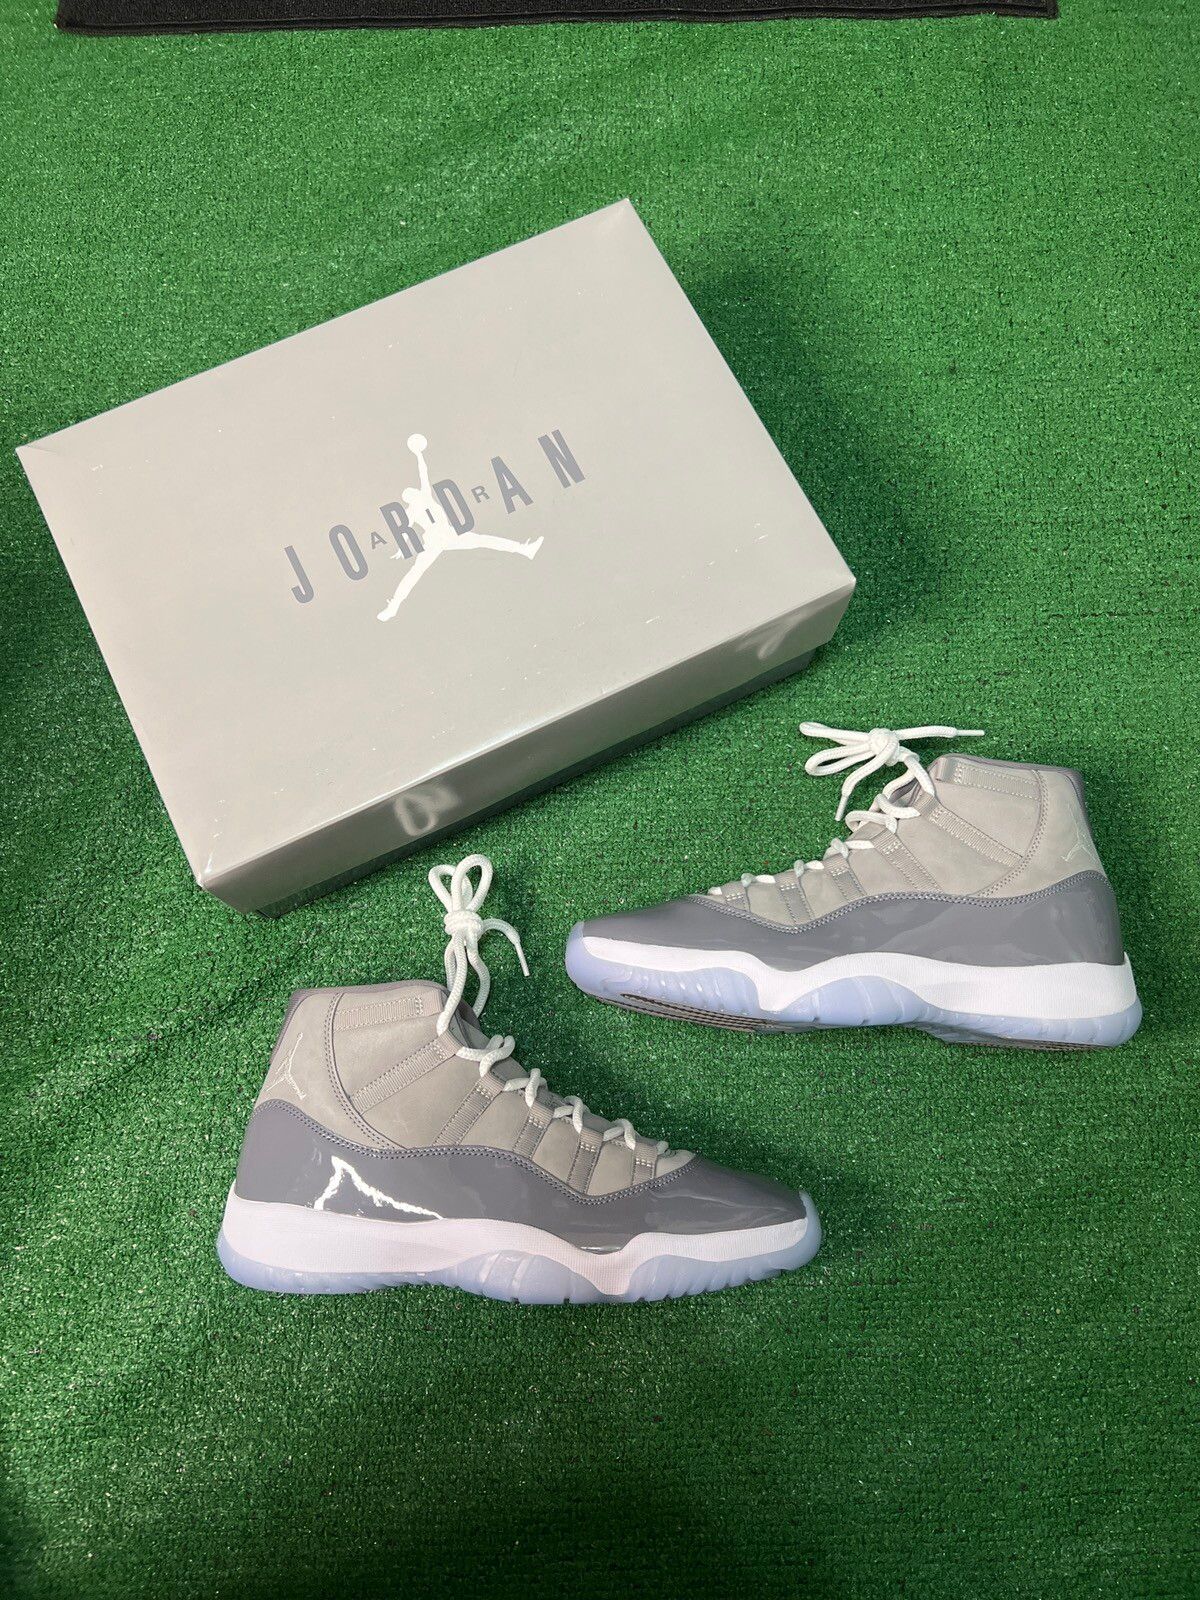 Pre-owned Jordan Nike Air Jordan 11 Retro “cool Grey” Deadstock 11.5 Shoes